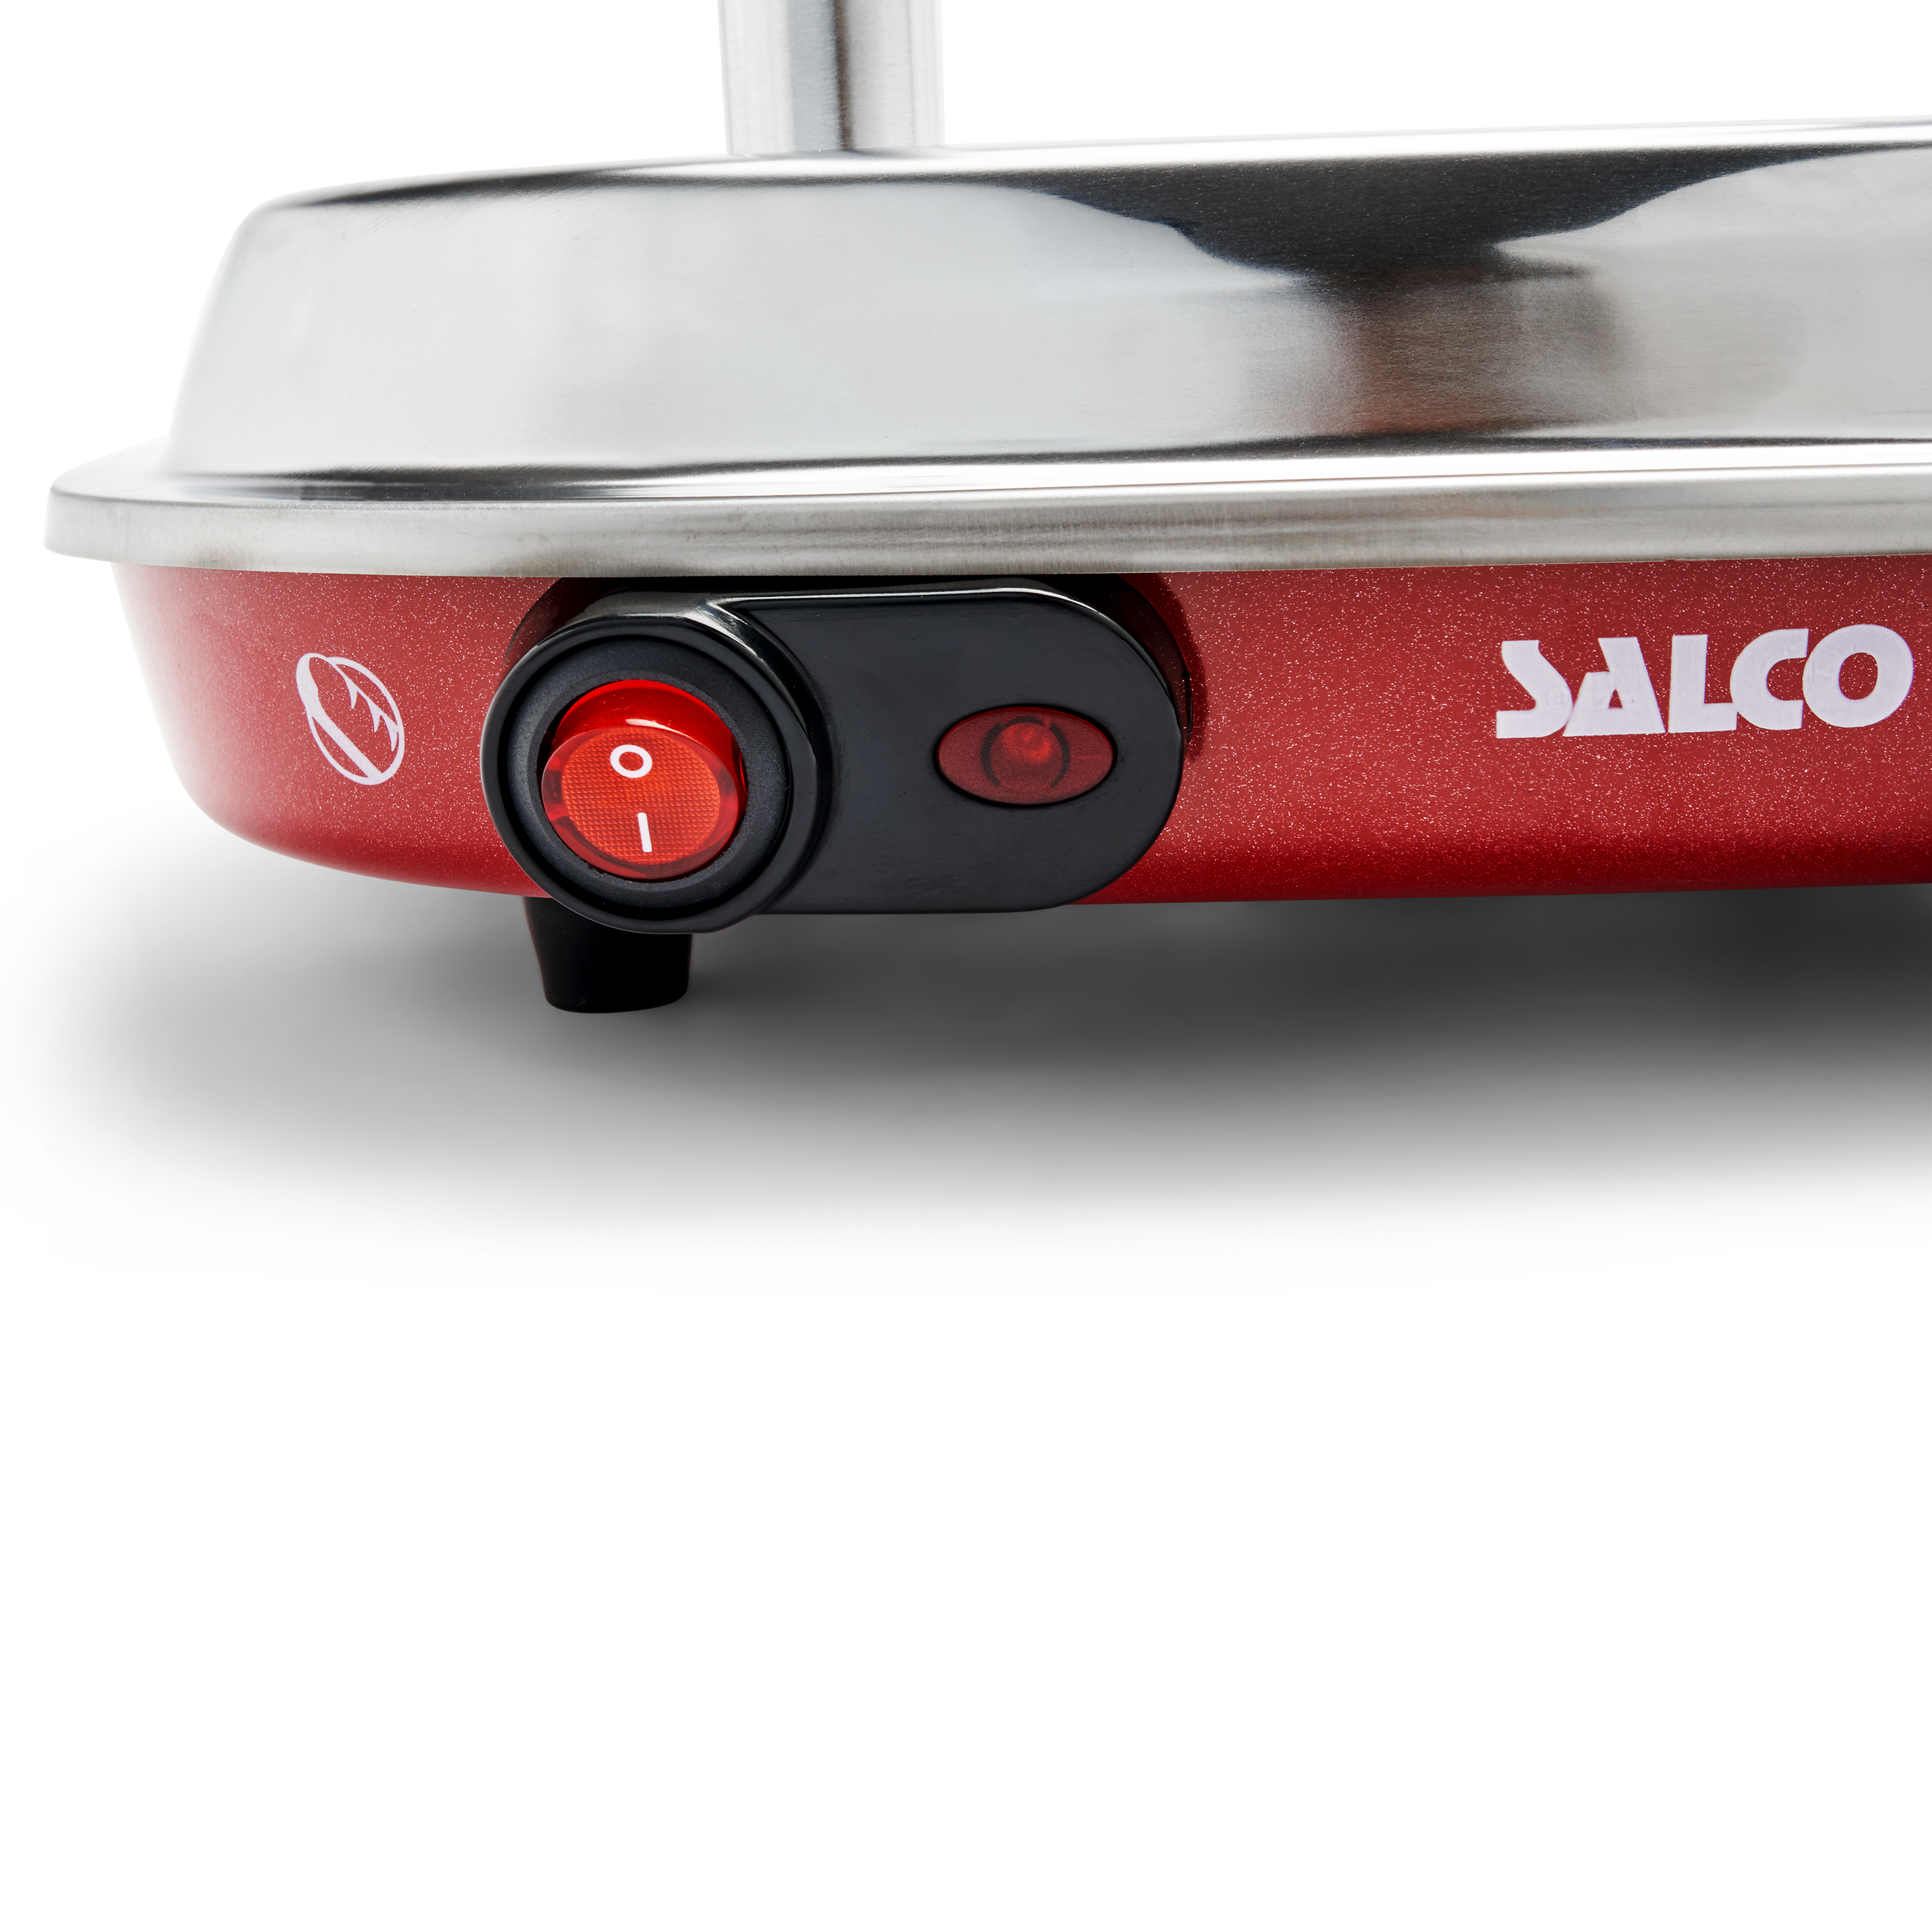 SALCO Salco HotDog Maker Brötchen für Retro-Style Food Fast HotDog-Maker, 450W rot) Dampfgarer Thermo-Control Würstchen und